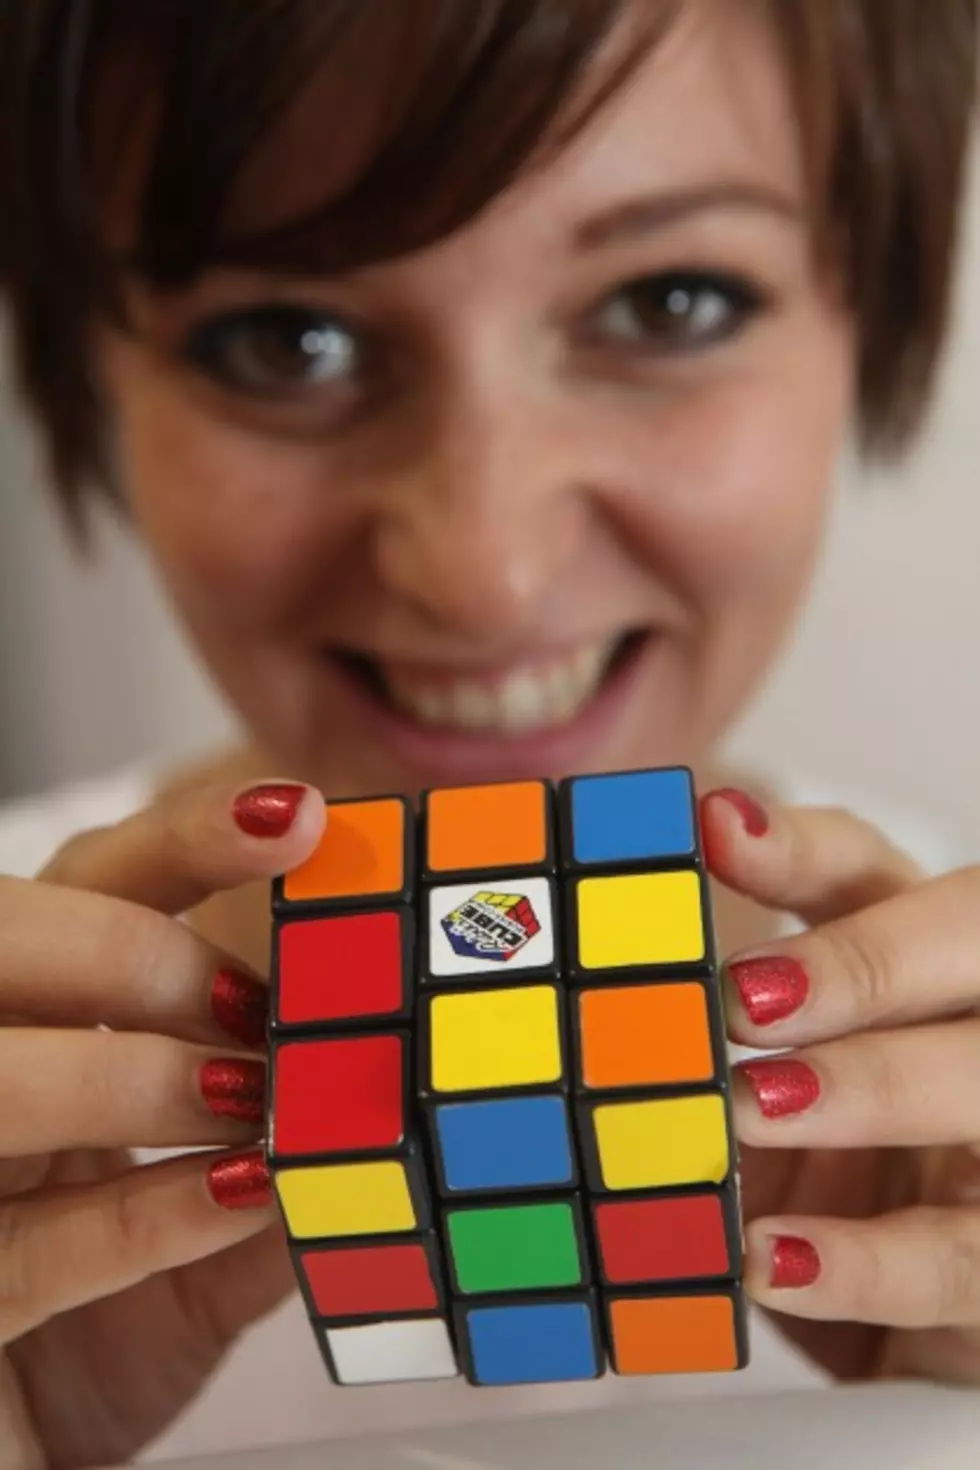 Baby Boomer Alert:  Happy Birthday to the Rubik&#8217;s Cube!